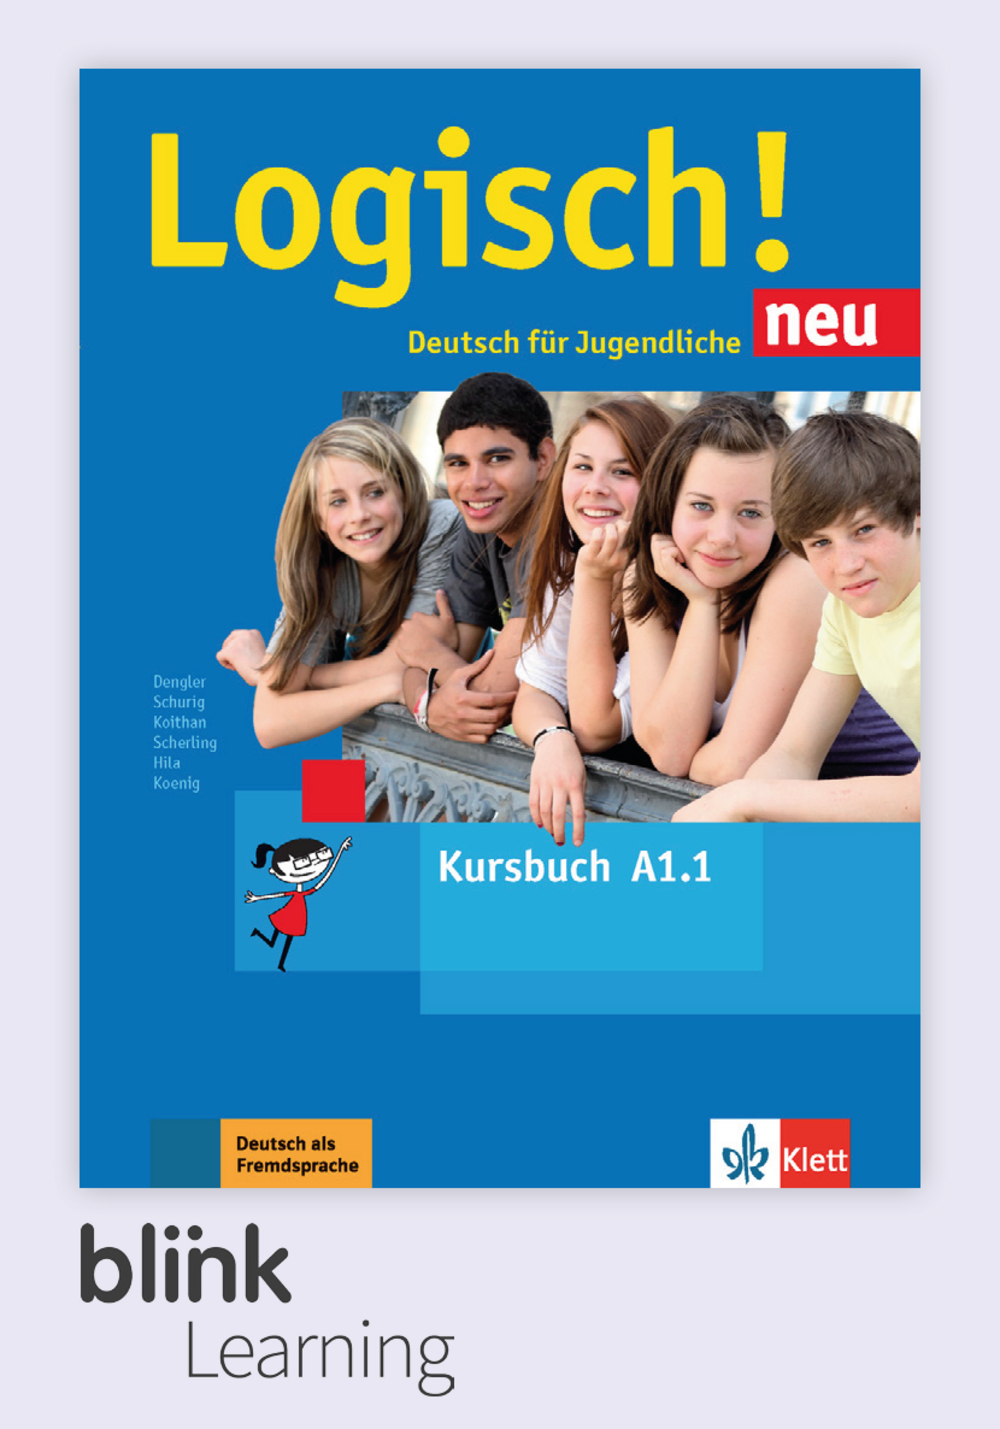 Logisch! neu A1.1 Digital Kursbuch fur Lernende / Цифровой учебник для ученика